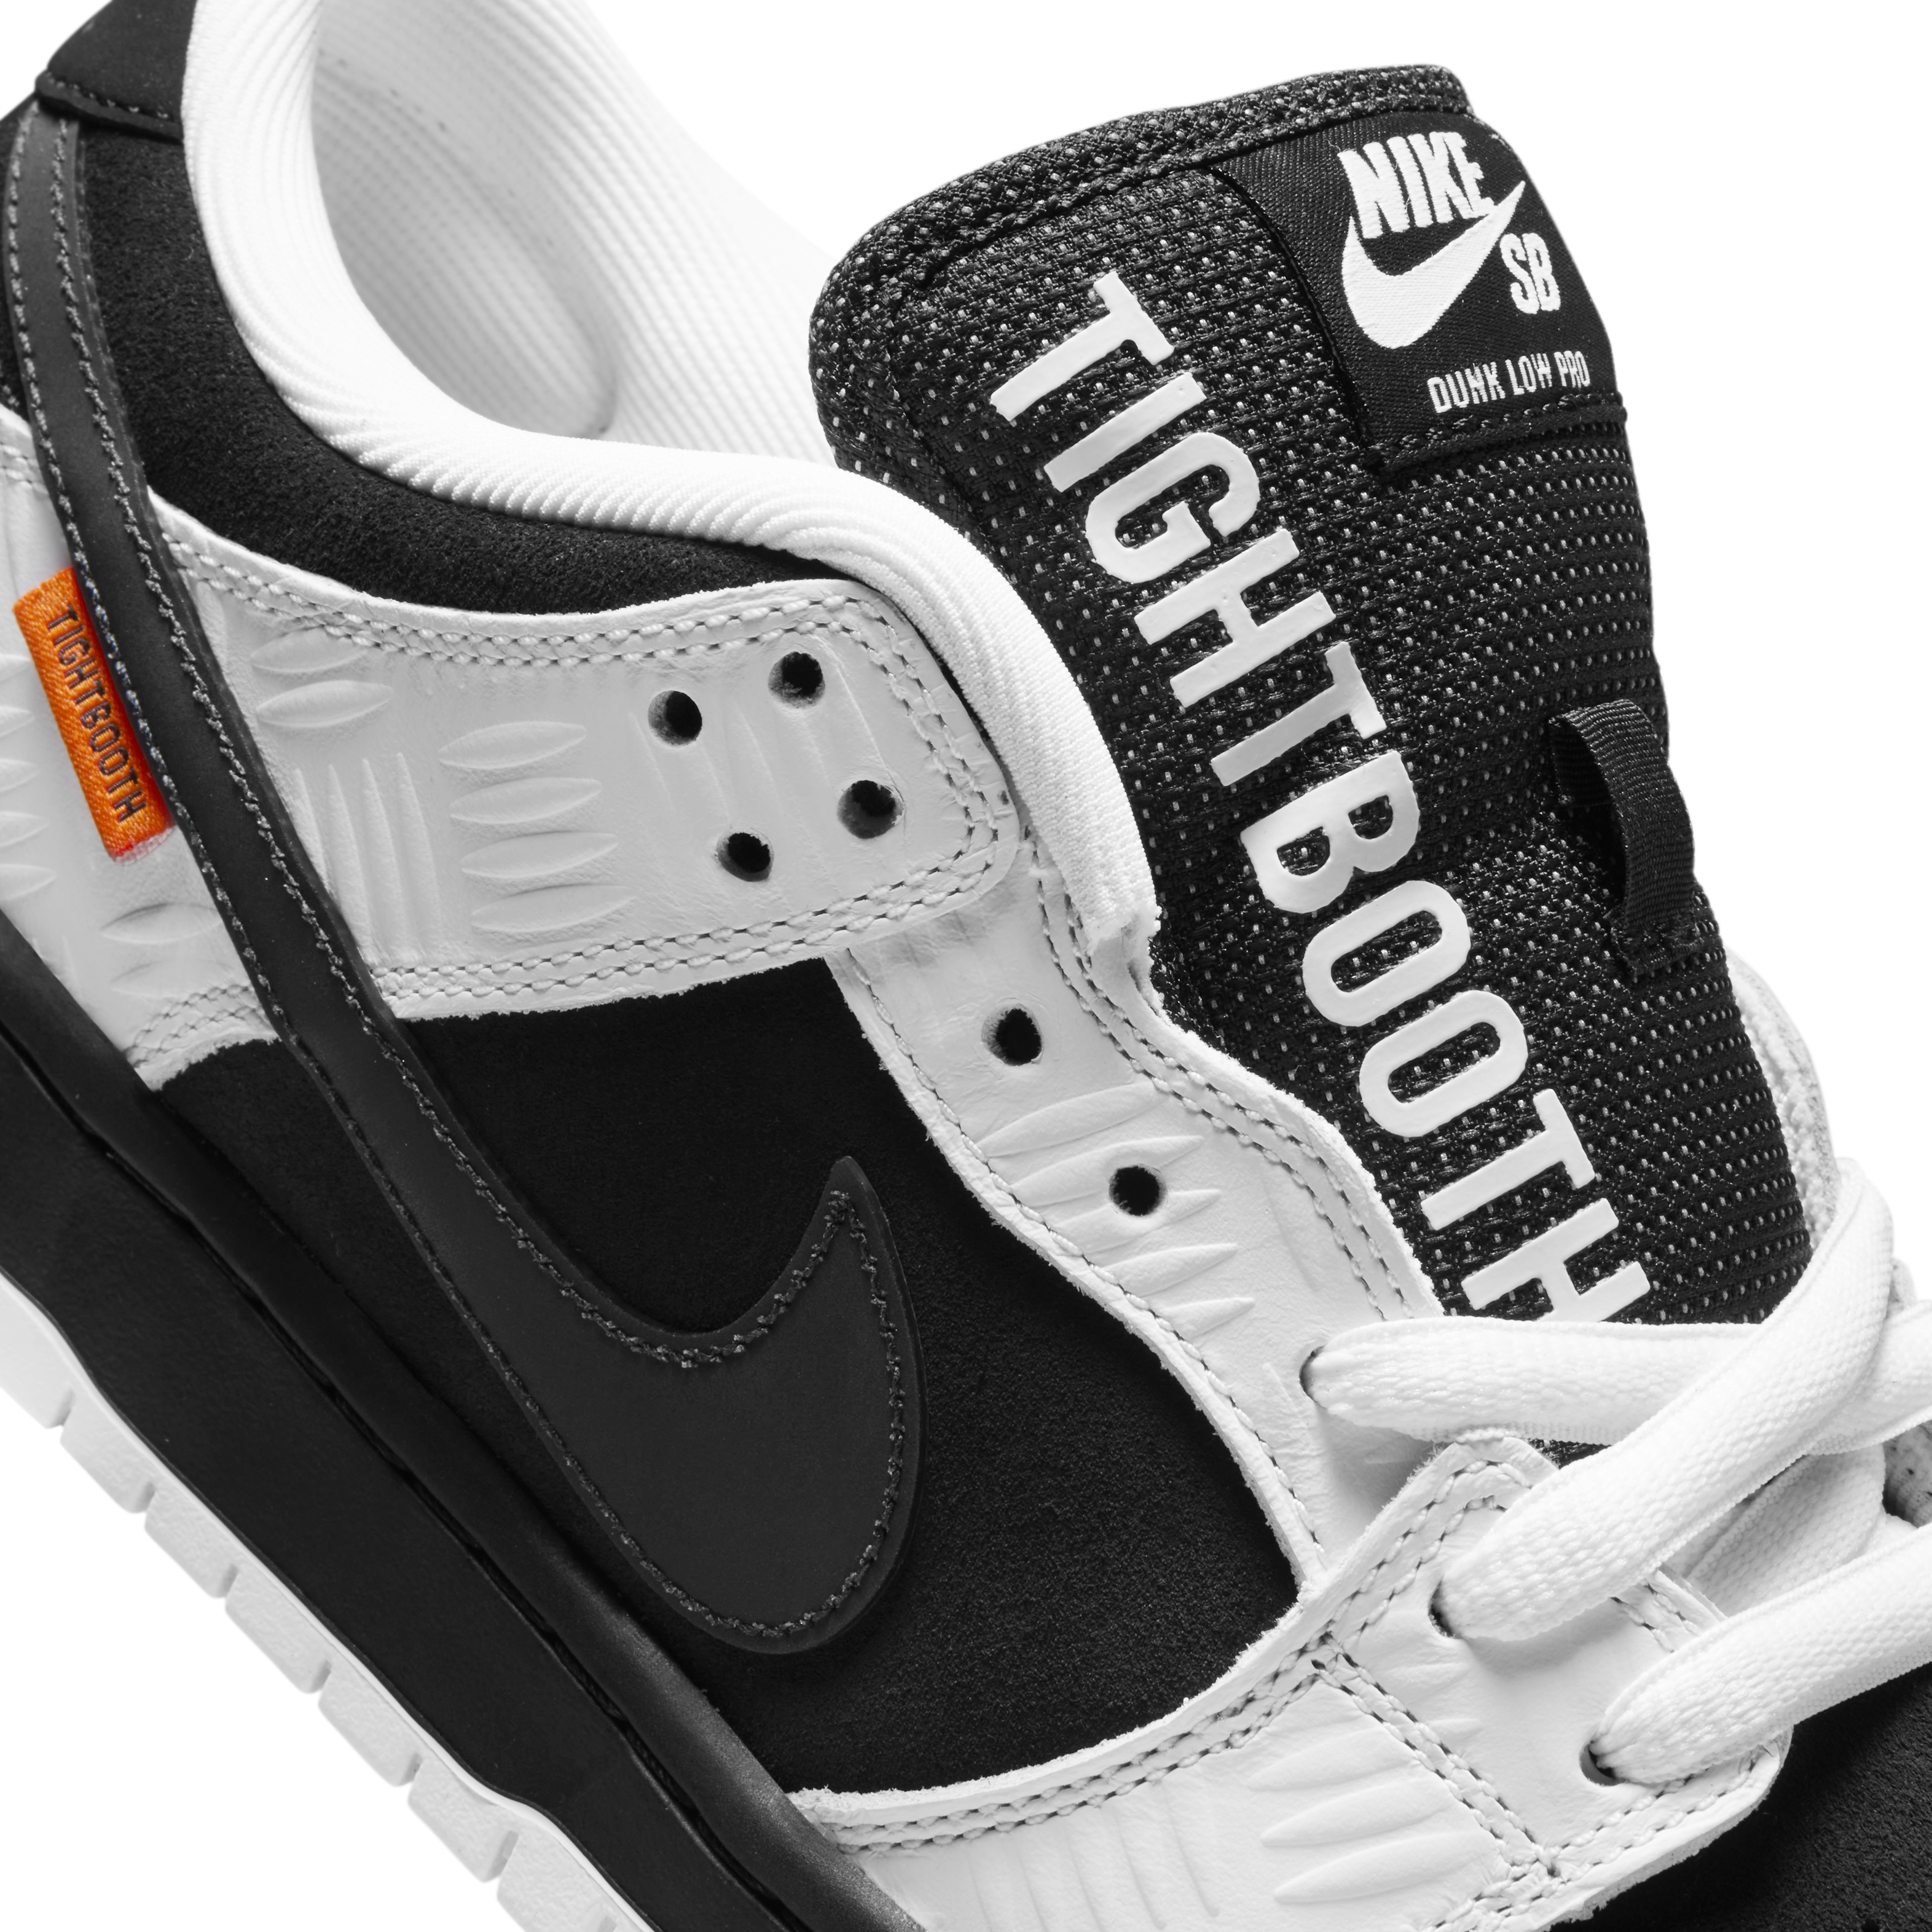 Nike SB Dunk x Tightbooth